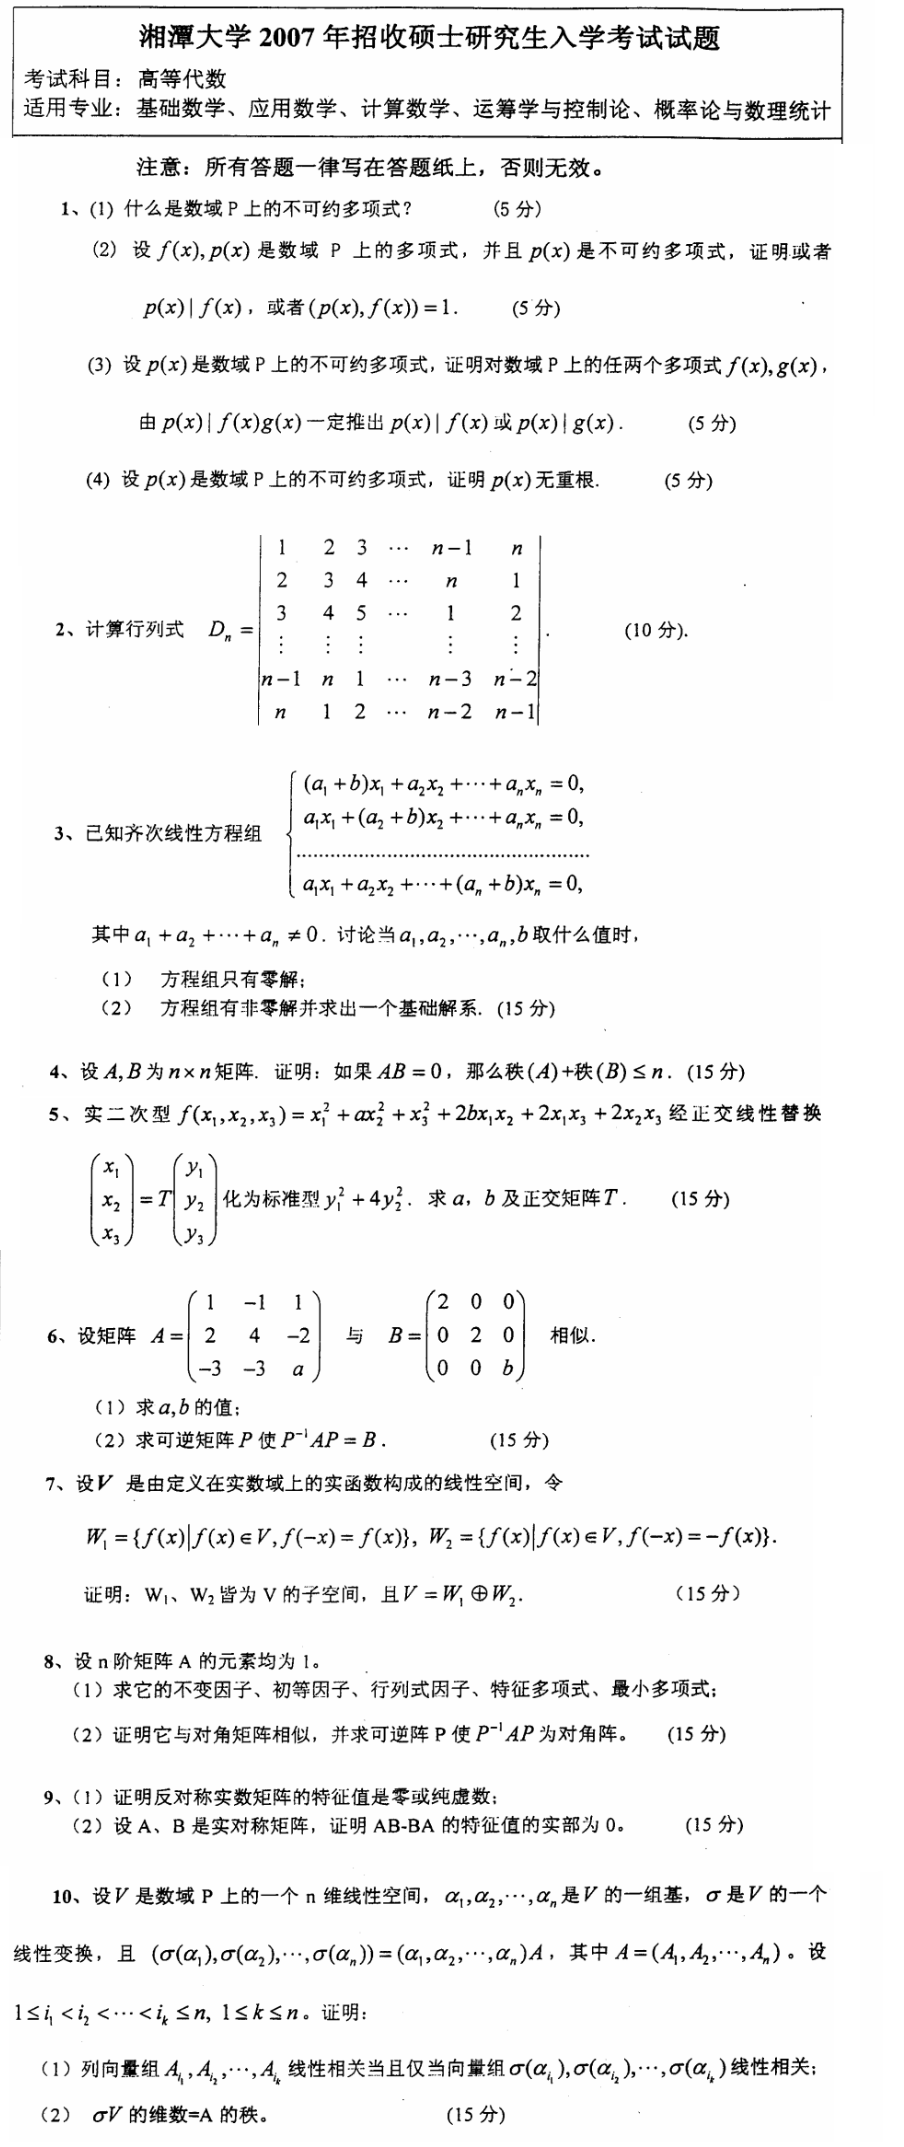 2007湘潭大学考研数学真题（高等代数）.png